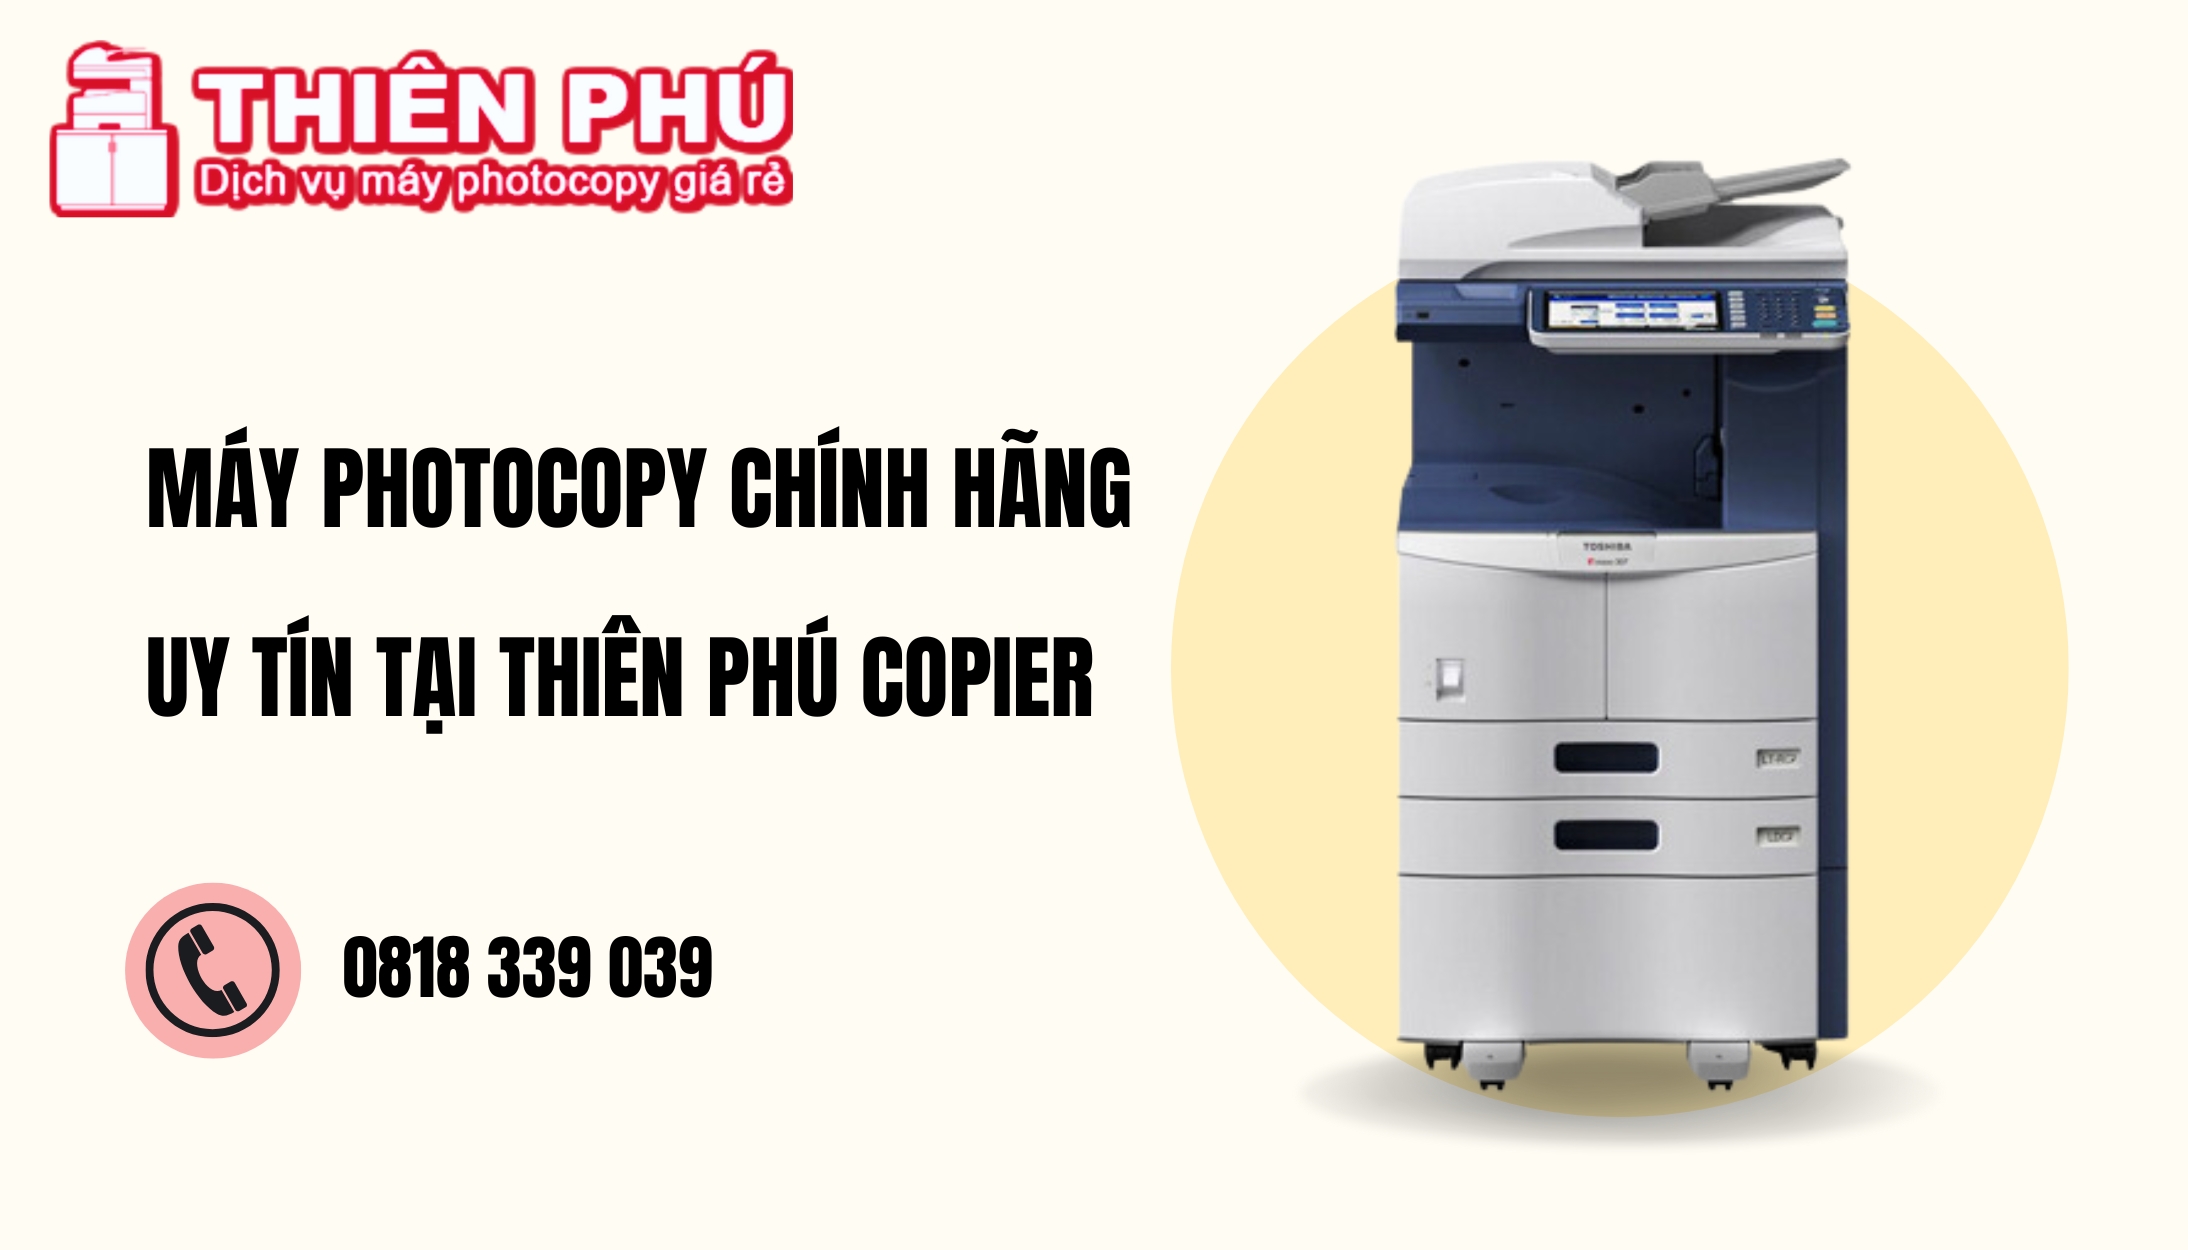 Thiên Phú Copier - Địa chỉ thuê và mua máy photocopy uy tín